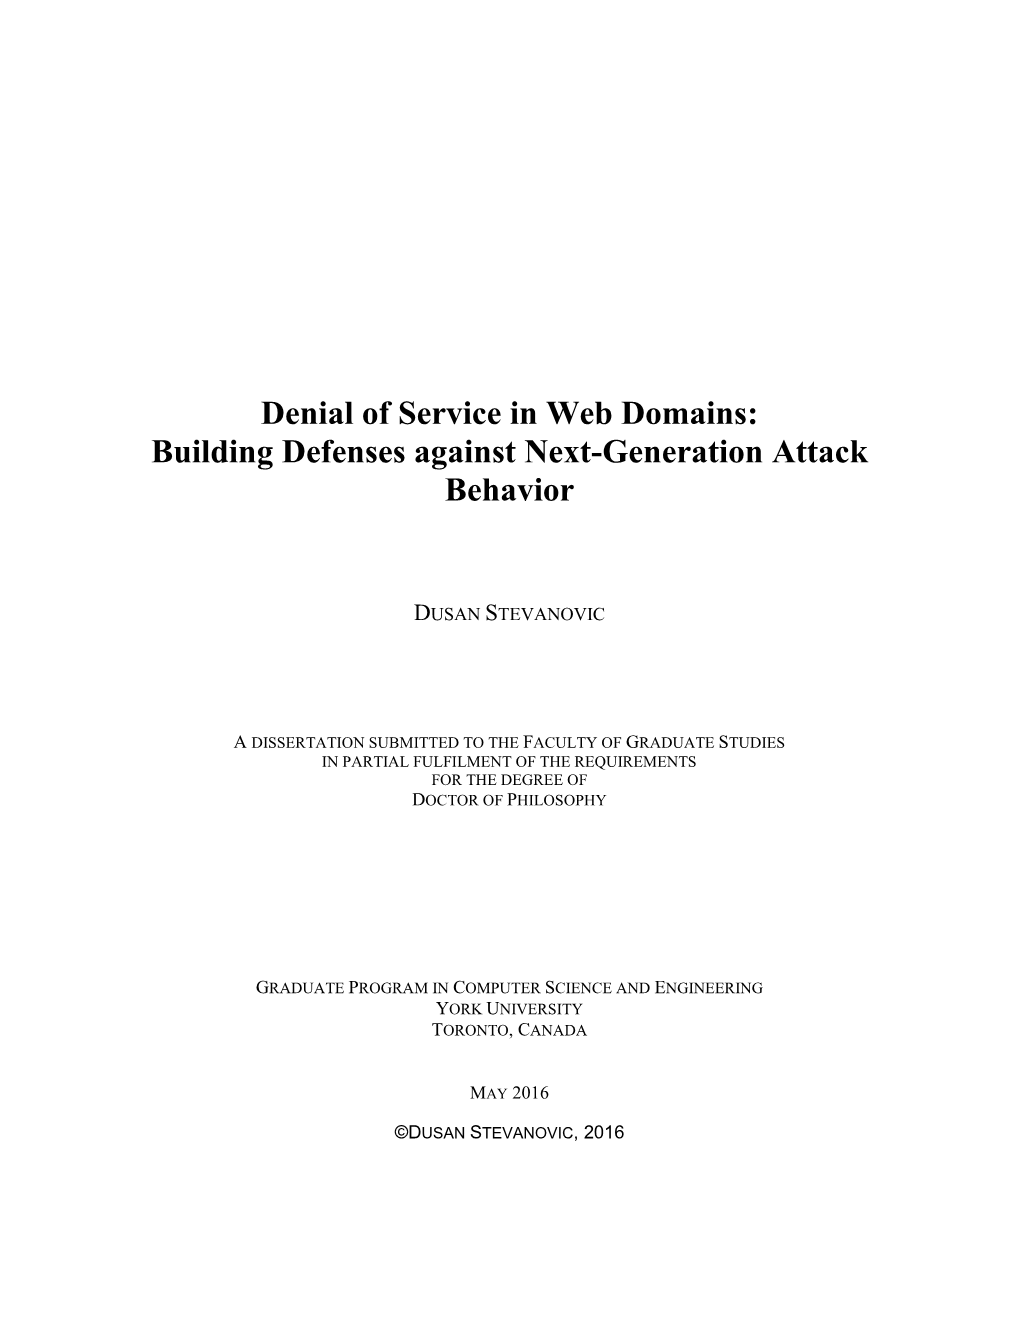 Building Defenses Against Next-Generation Attack Behavior